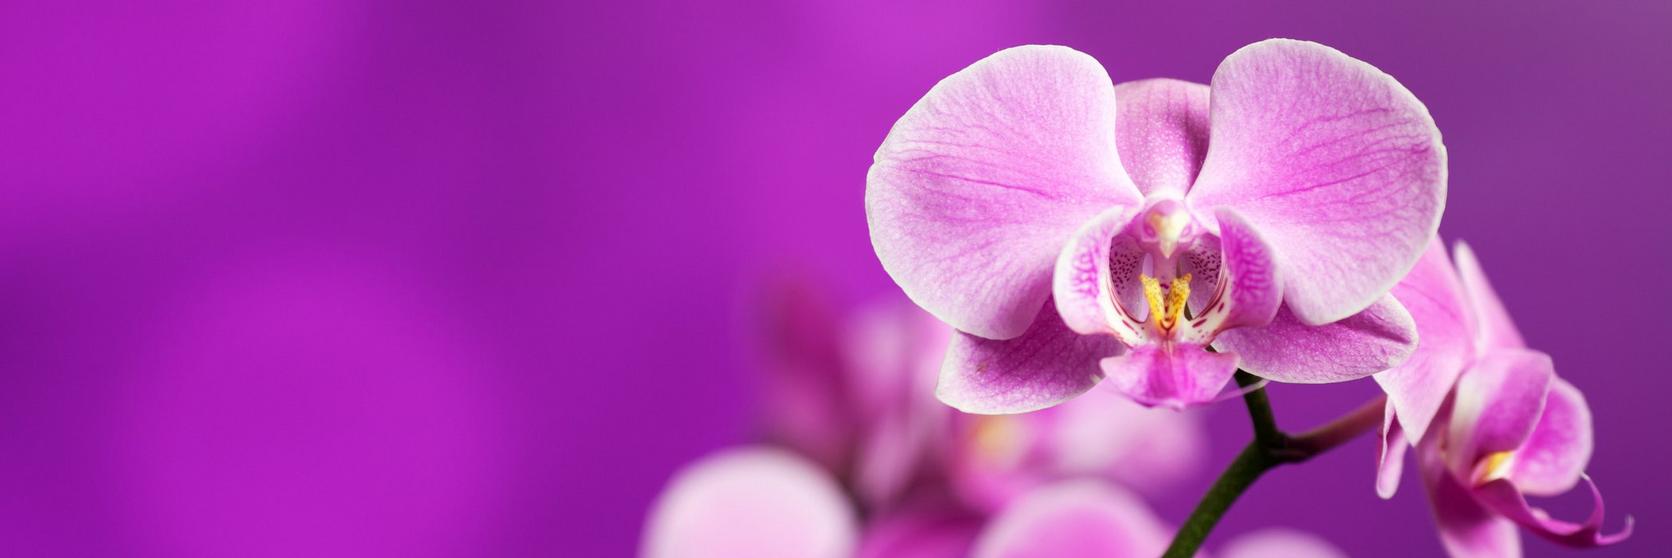 orchid-purple-flower